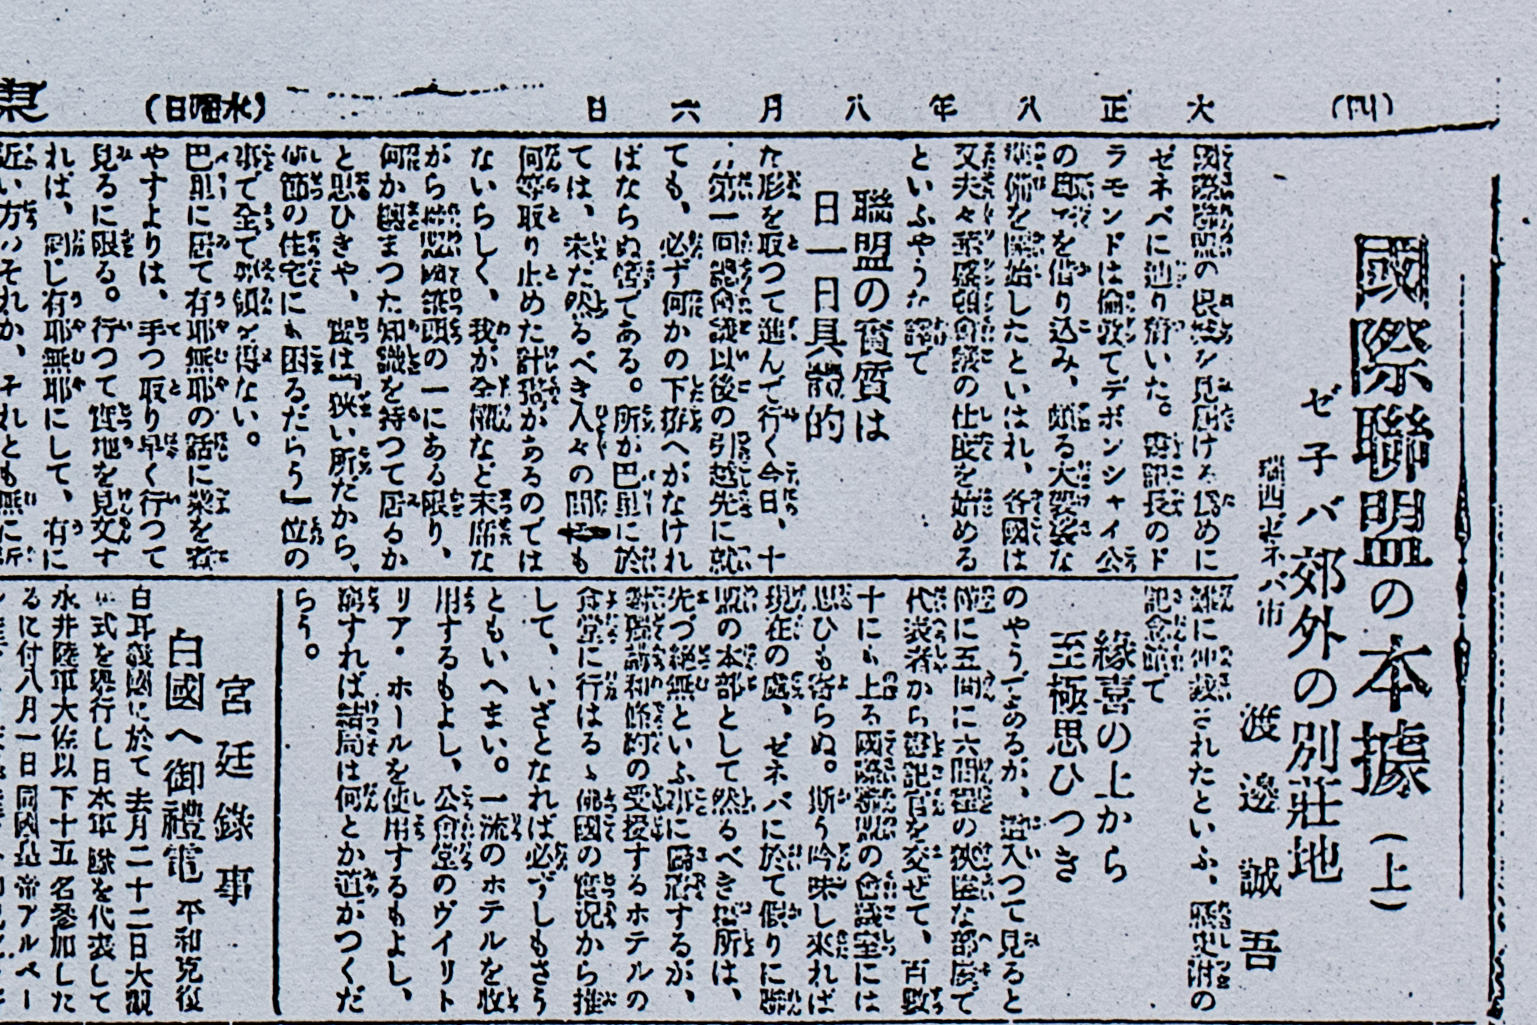 نسخة من مقال نشر في صحيفة يابانية